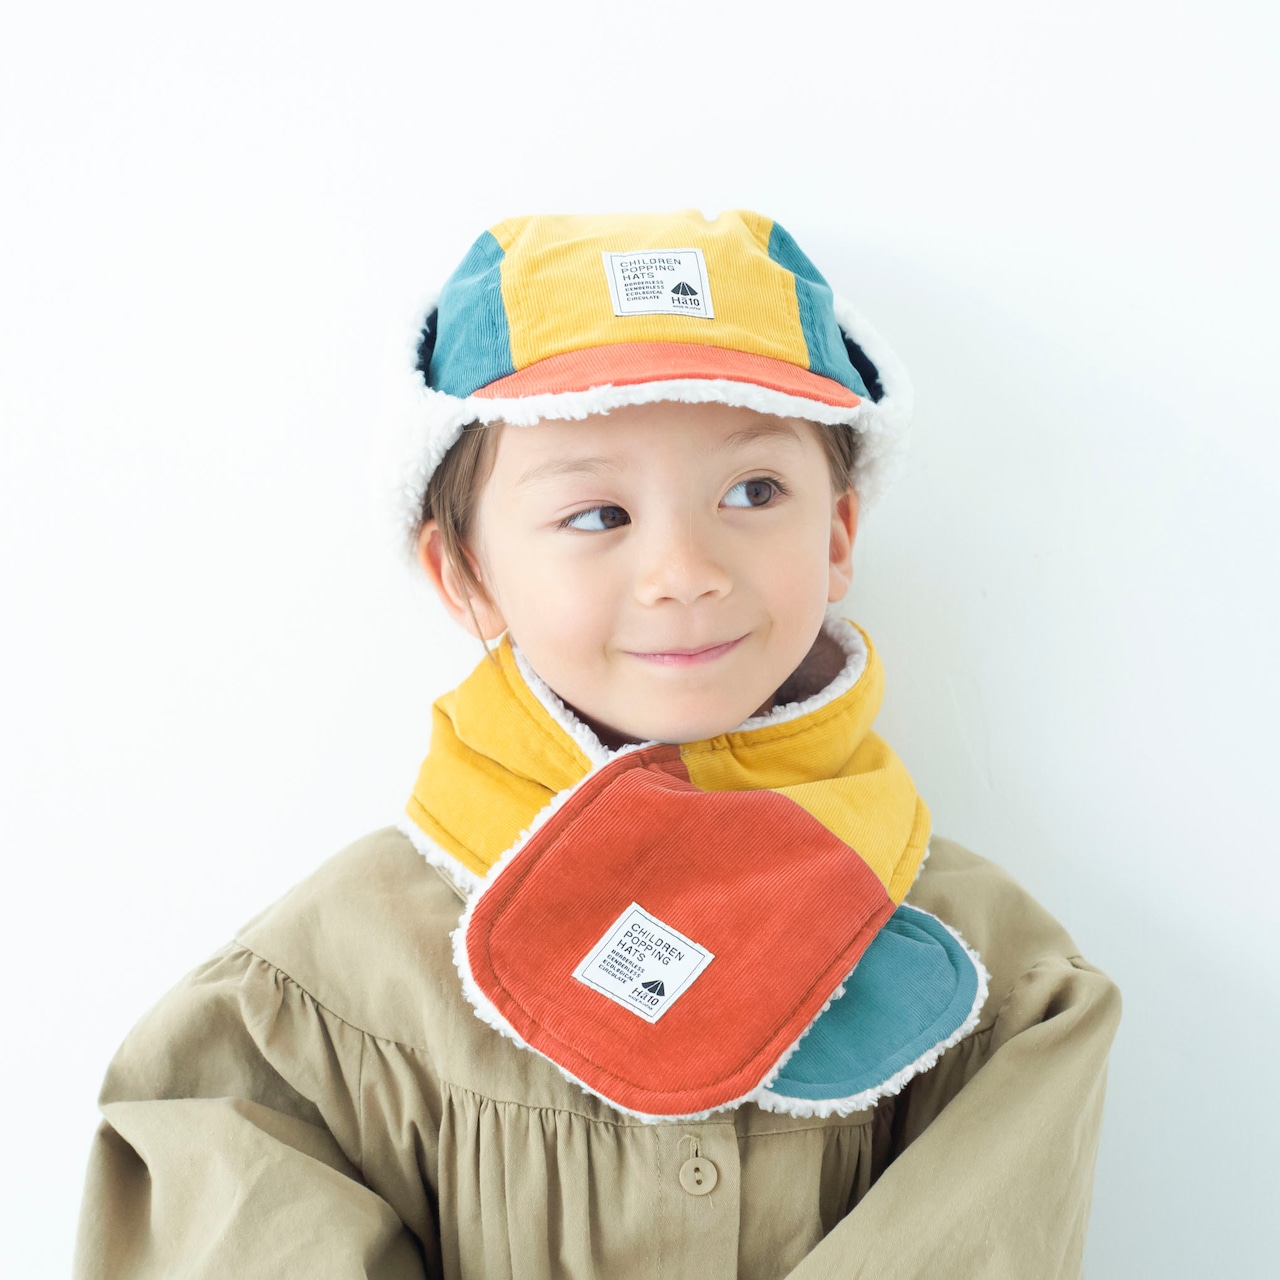 マフラー【マルチオレンジ】ブランド 子供 帽子 男の子 女の子 男女兼用 日本製 出産祝い キャップ ハット キッズ ギフト